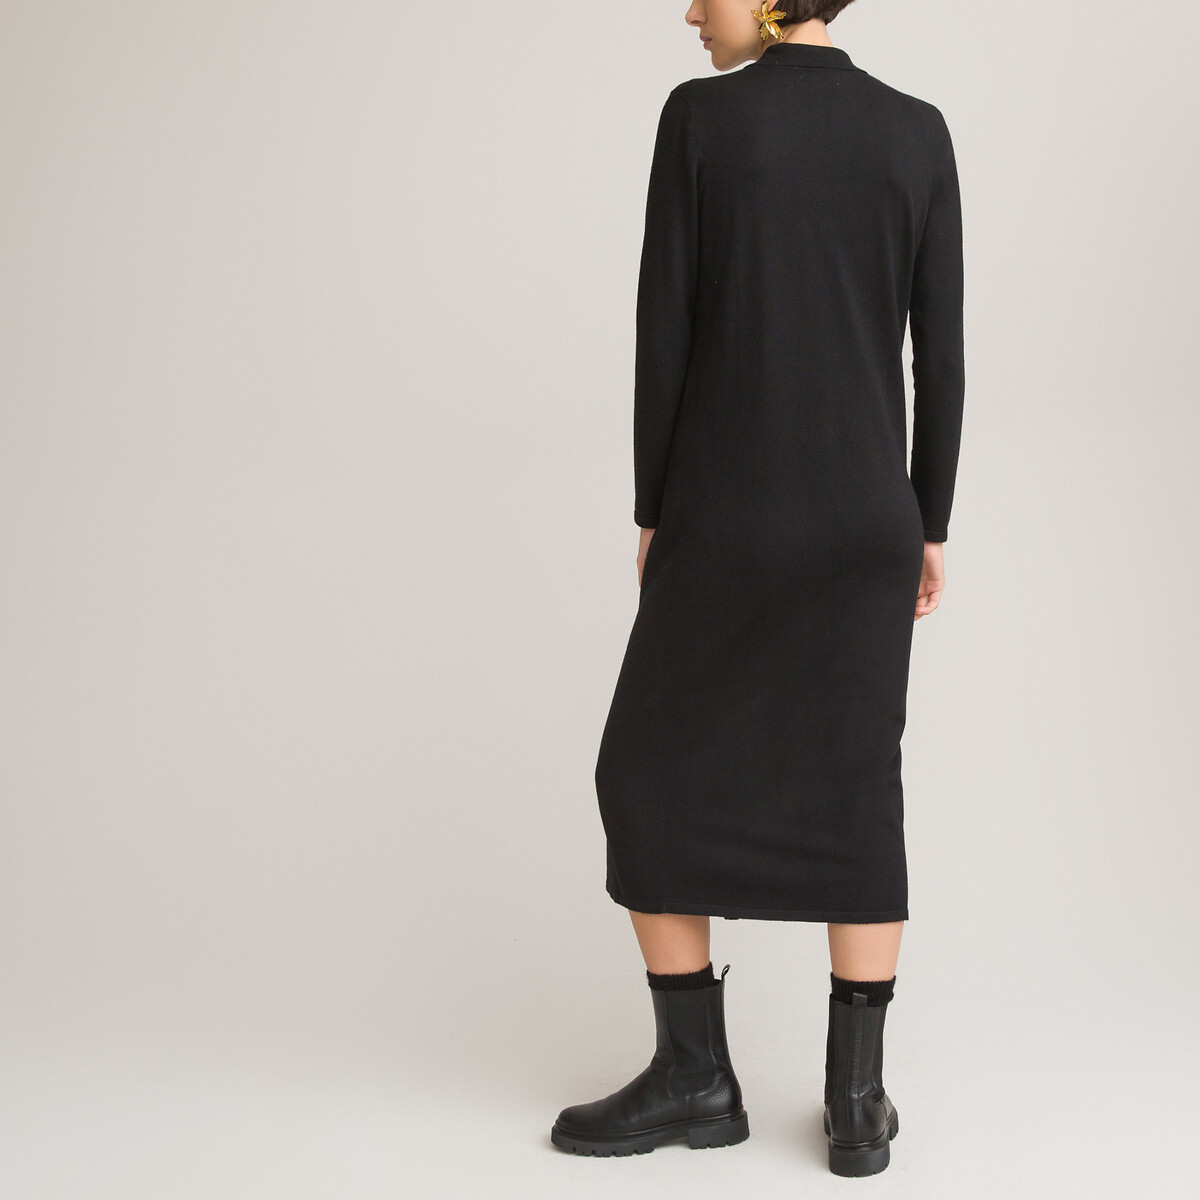 Платье-пуловер LA REDOUTE COLLECTIONS Воротник-поло длинные рукава XL черный, размер XL - фото 4